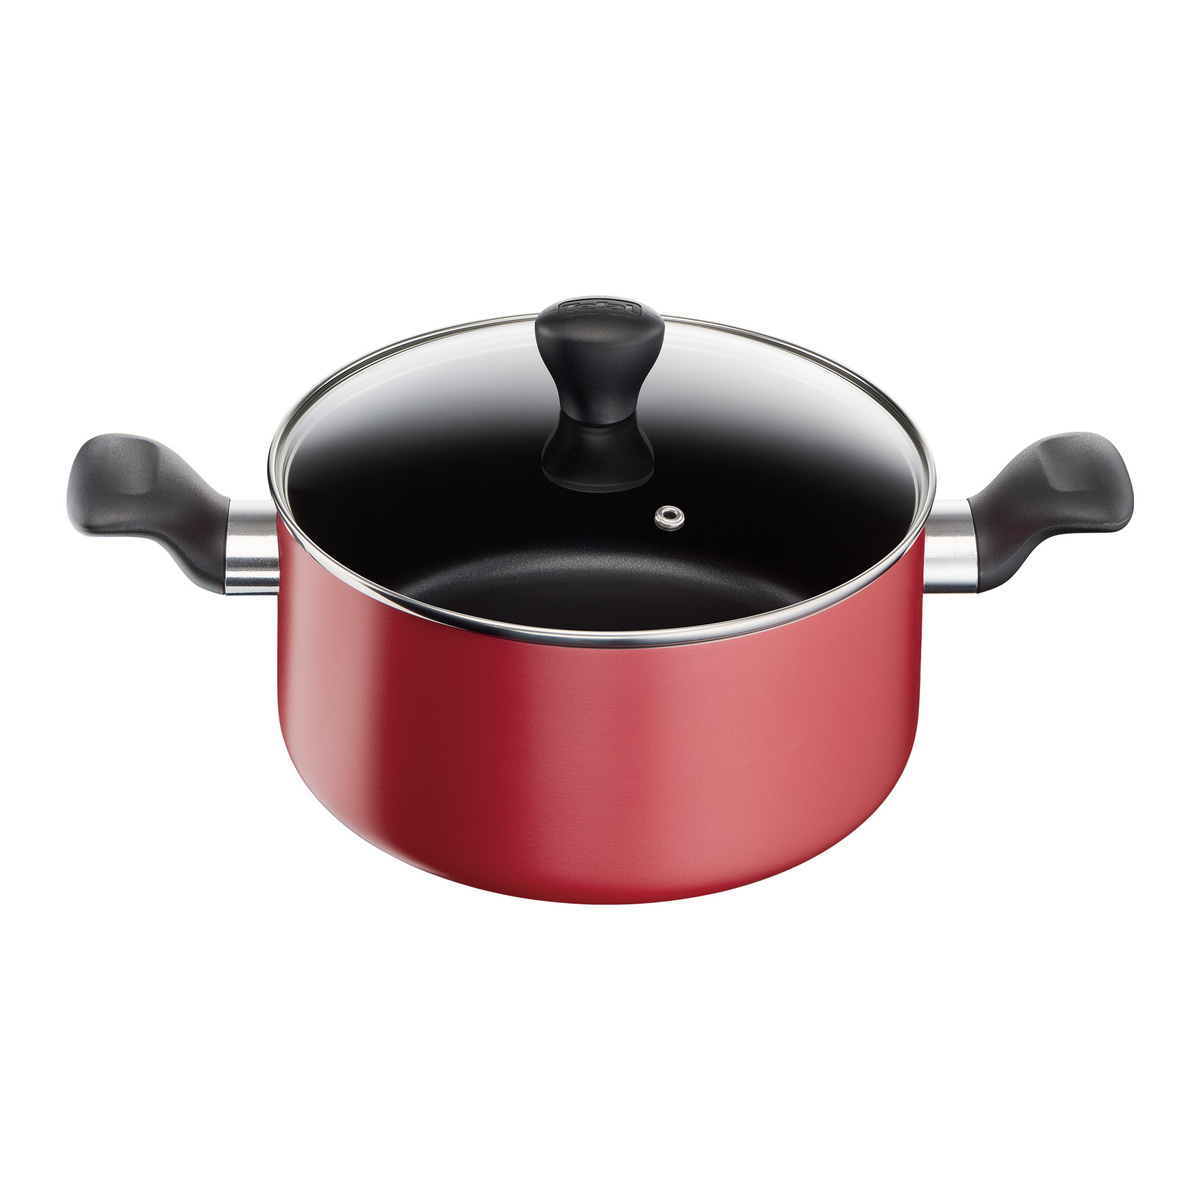 Buy Tefal G6 Super Cook Fry Pan 26cm And 24cm 2 PCS Online - Shop